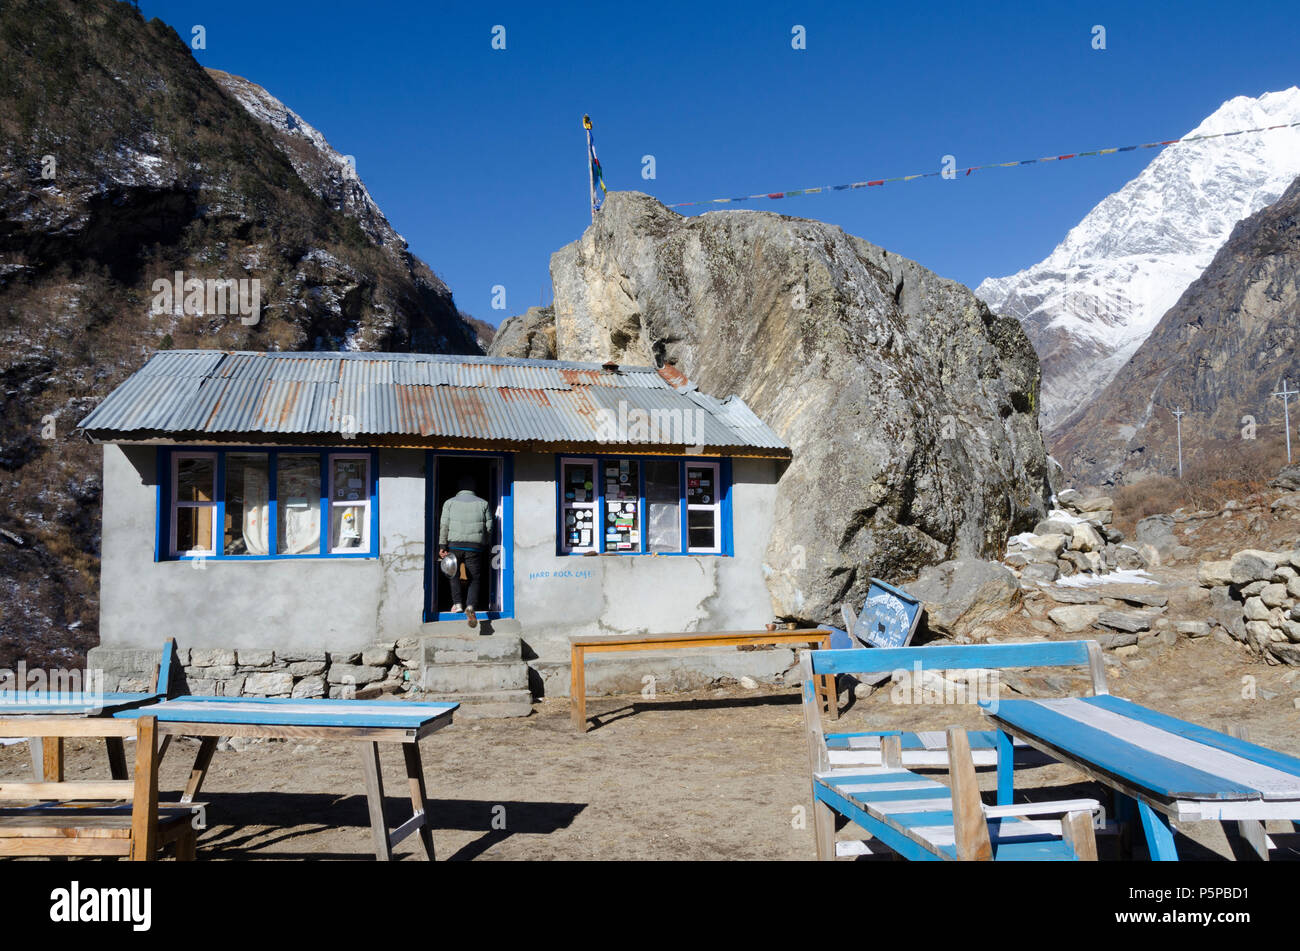 Plateau-maison construite en gros rocher, appelé Hard Rock Cafe, Mundu, Langtang, Népal Banque D'Images